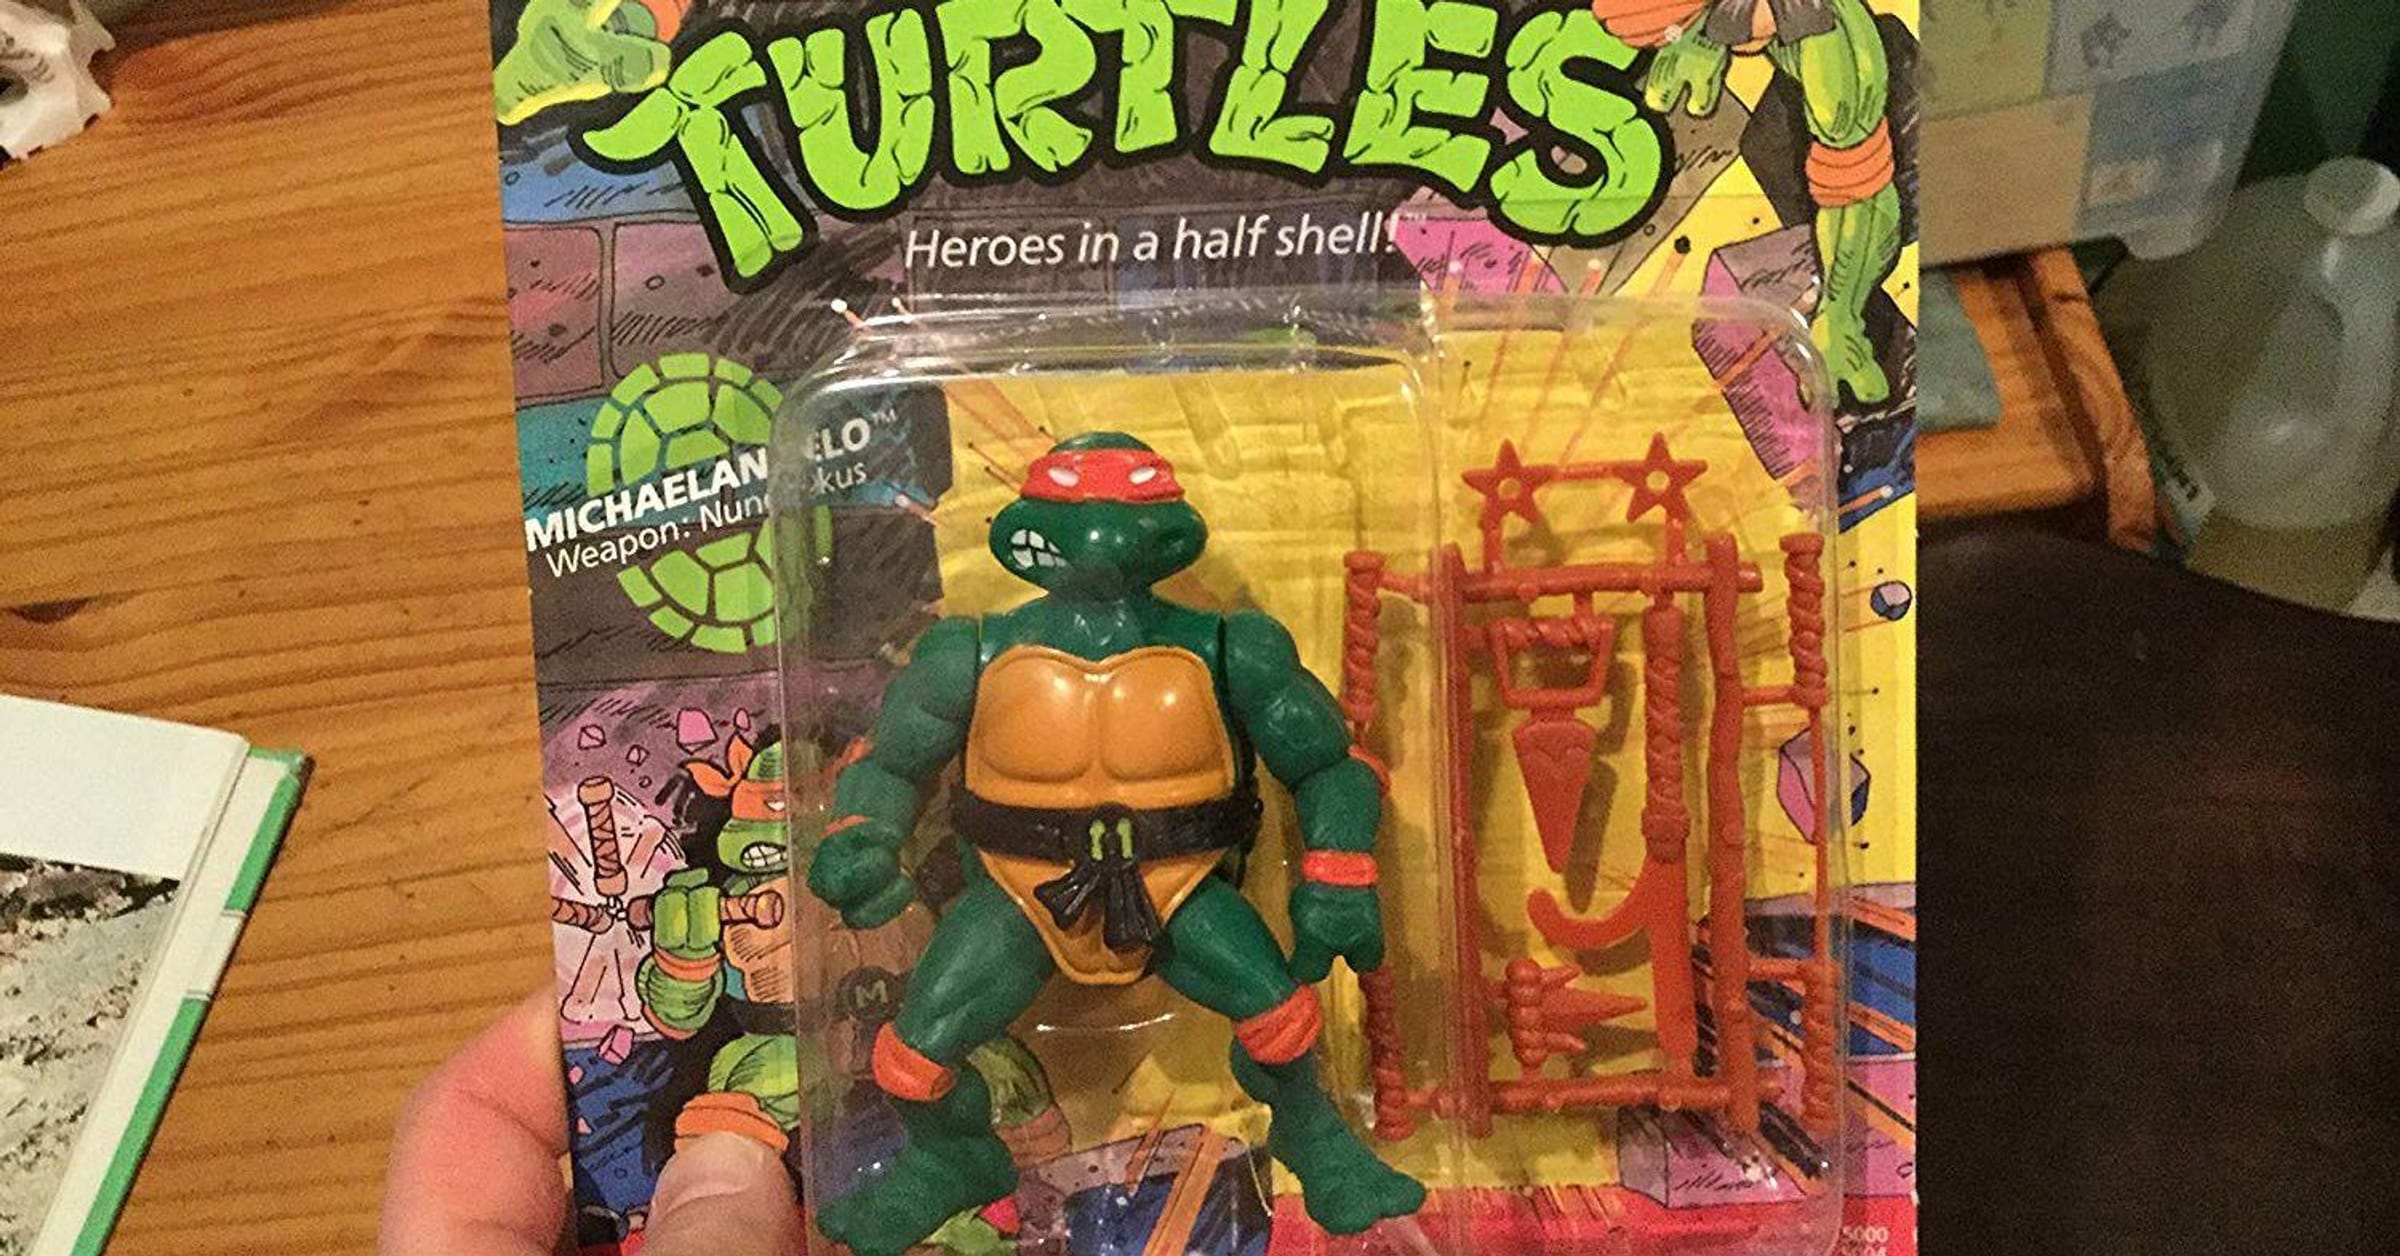 Teenage Mutant Ninja Turtles 1990 Movie Star Donatello Action Figure  [Limited Edition]